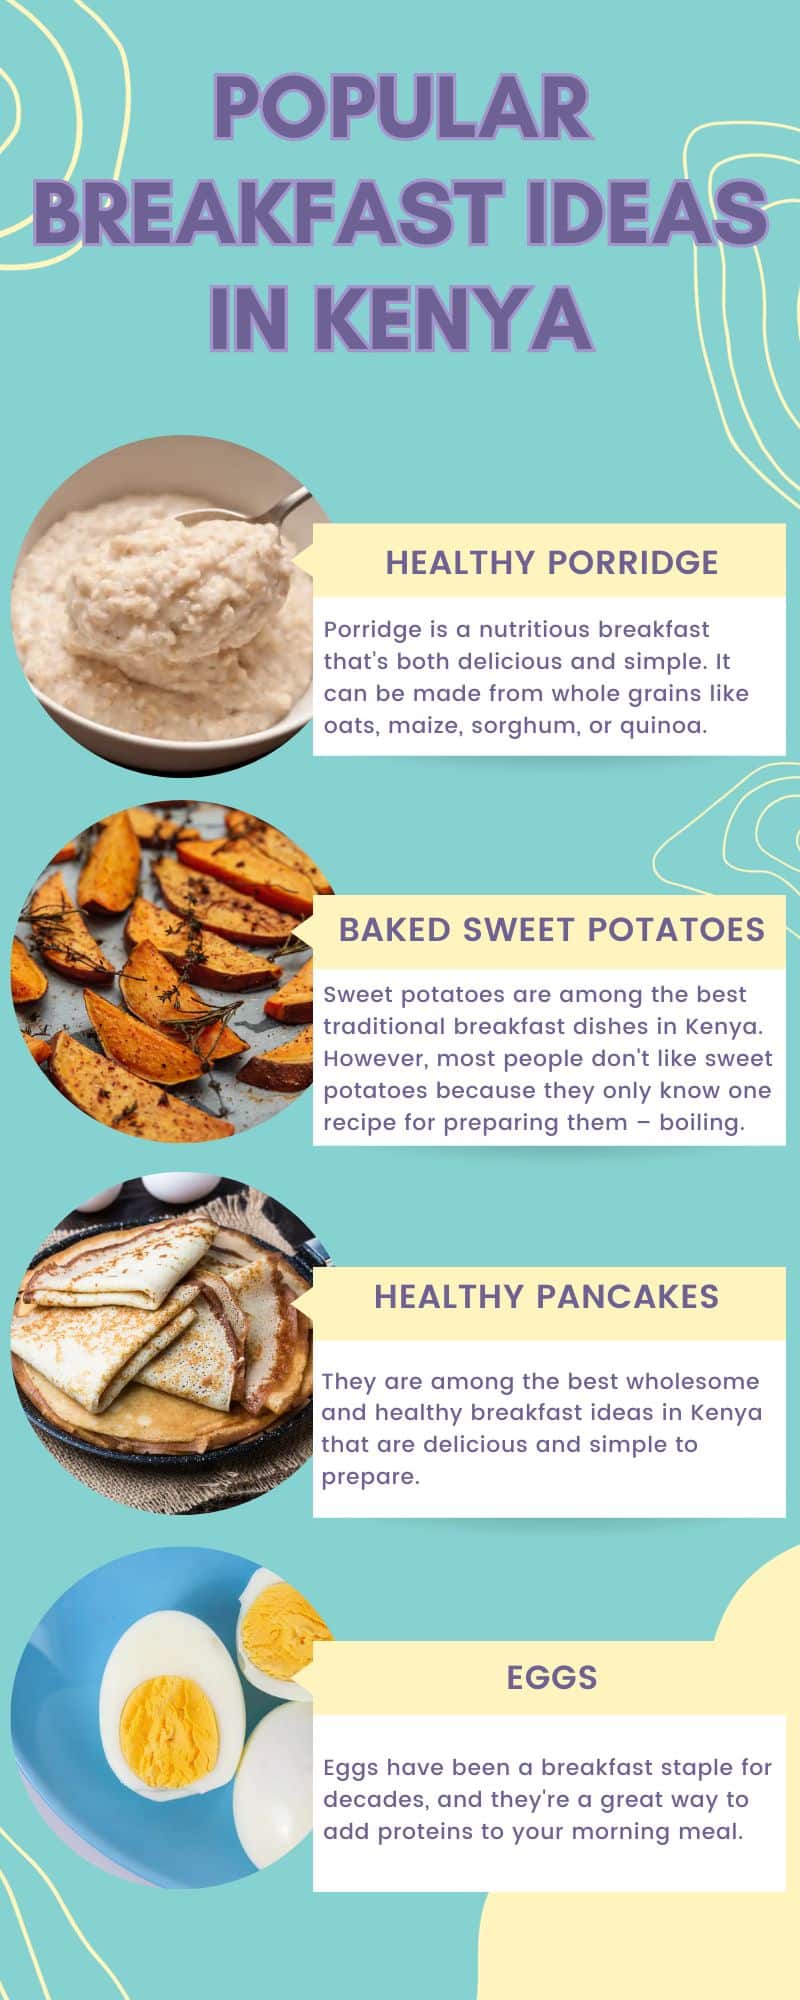 Popular breakfast ideas in Kenya